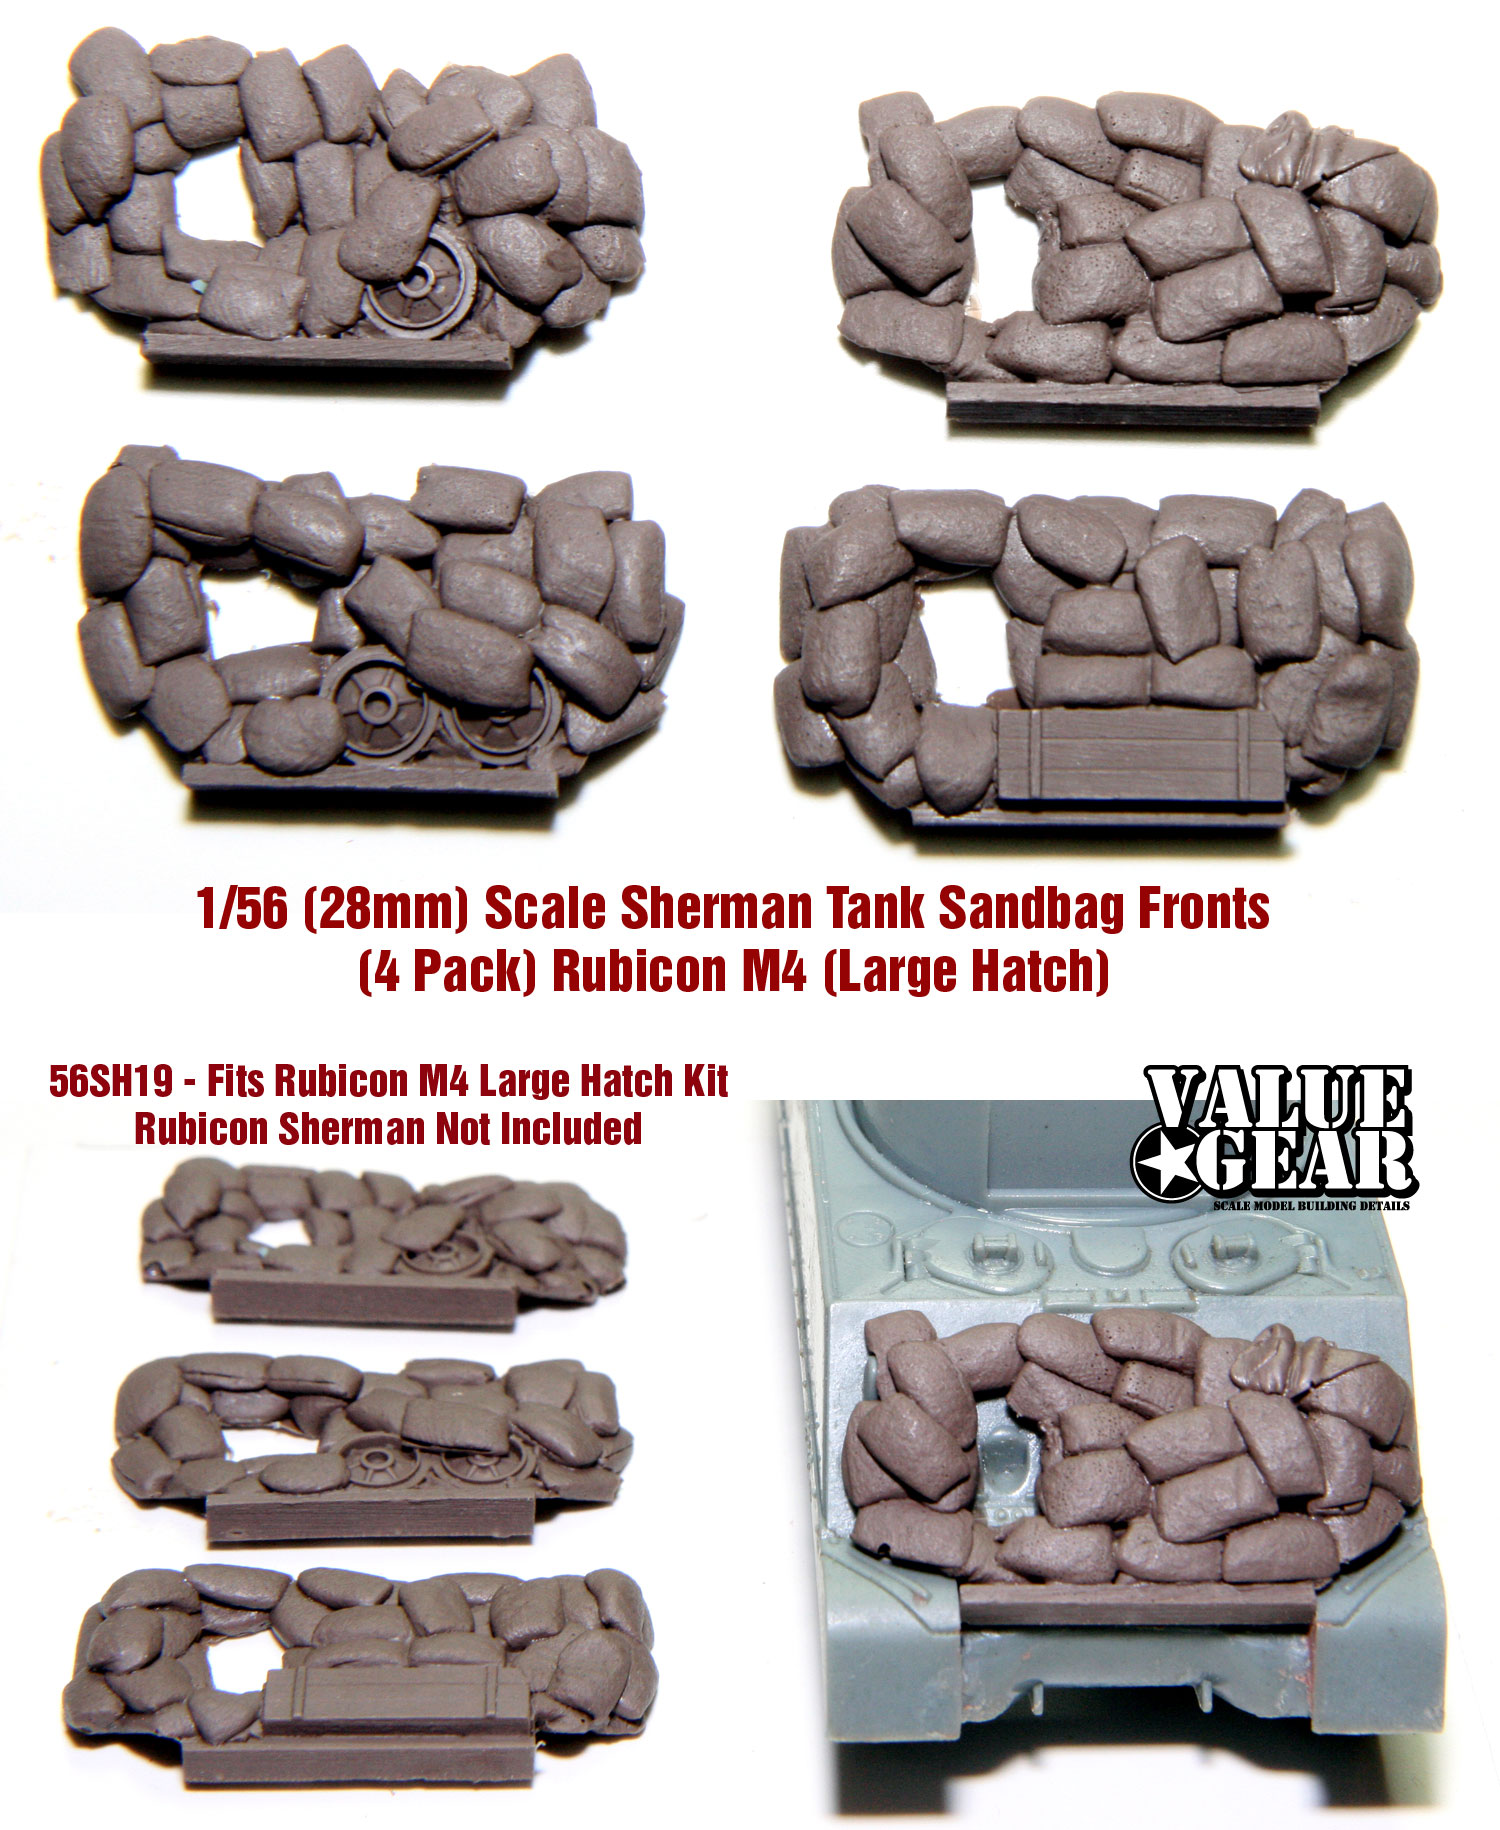 1/56 scale   56SH14 Log Sets For 1/56 Sherman Version 1 4pack 8 Bundles 28mm 